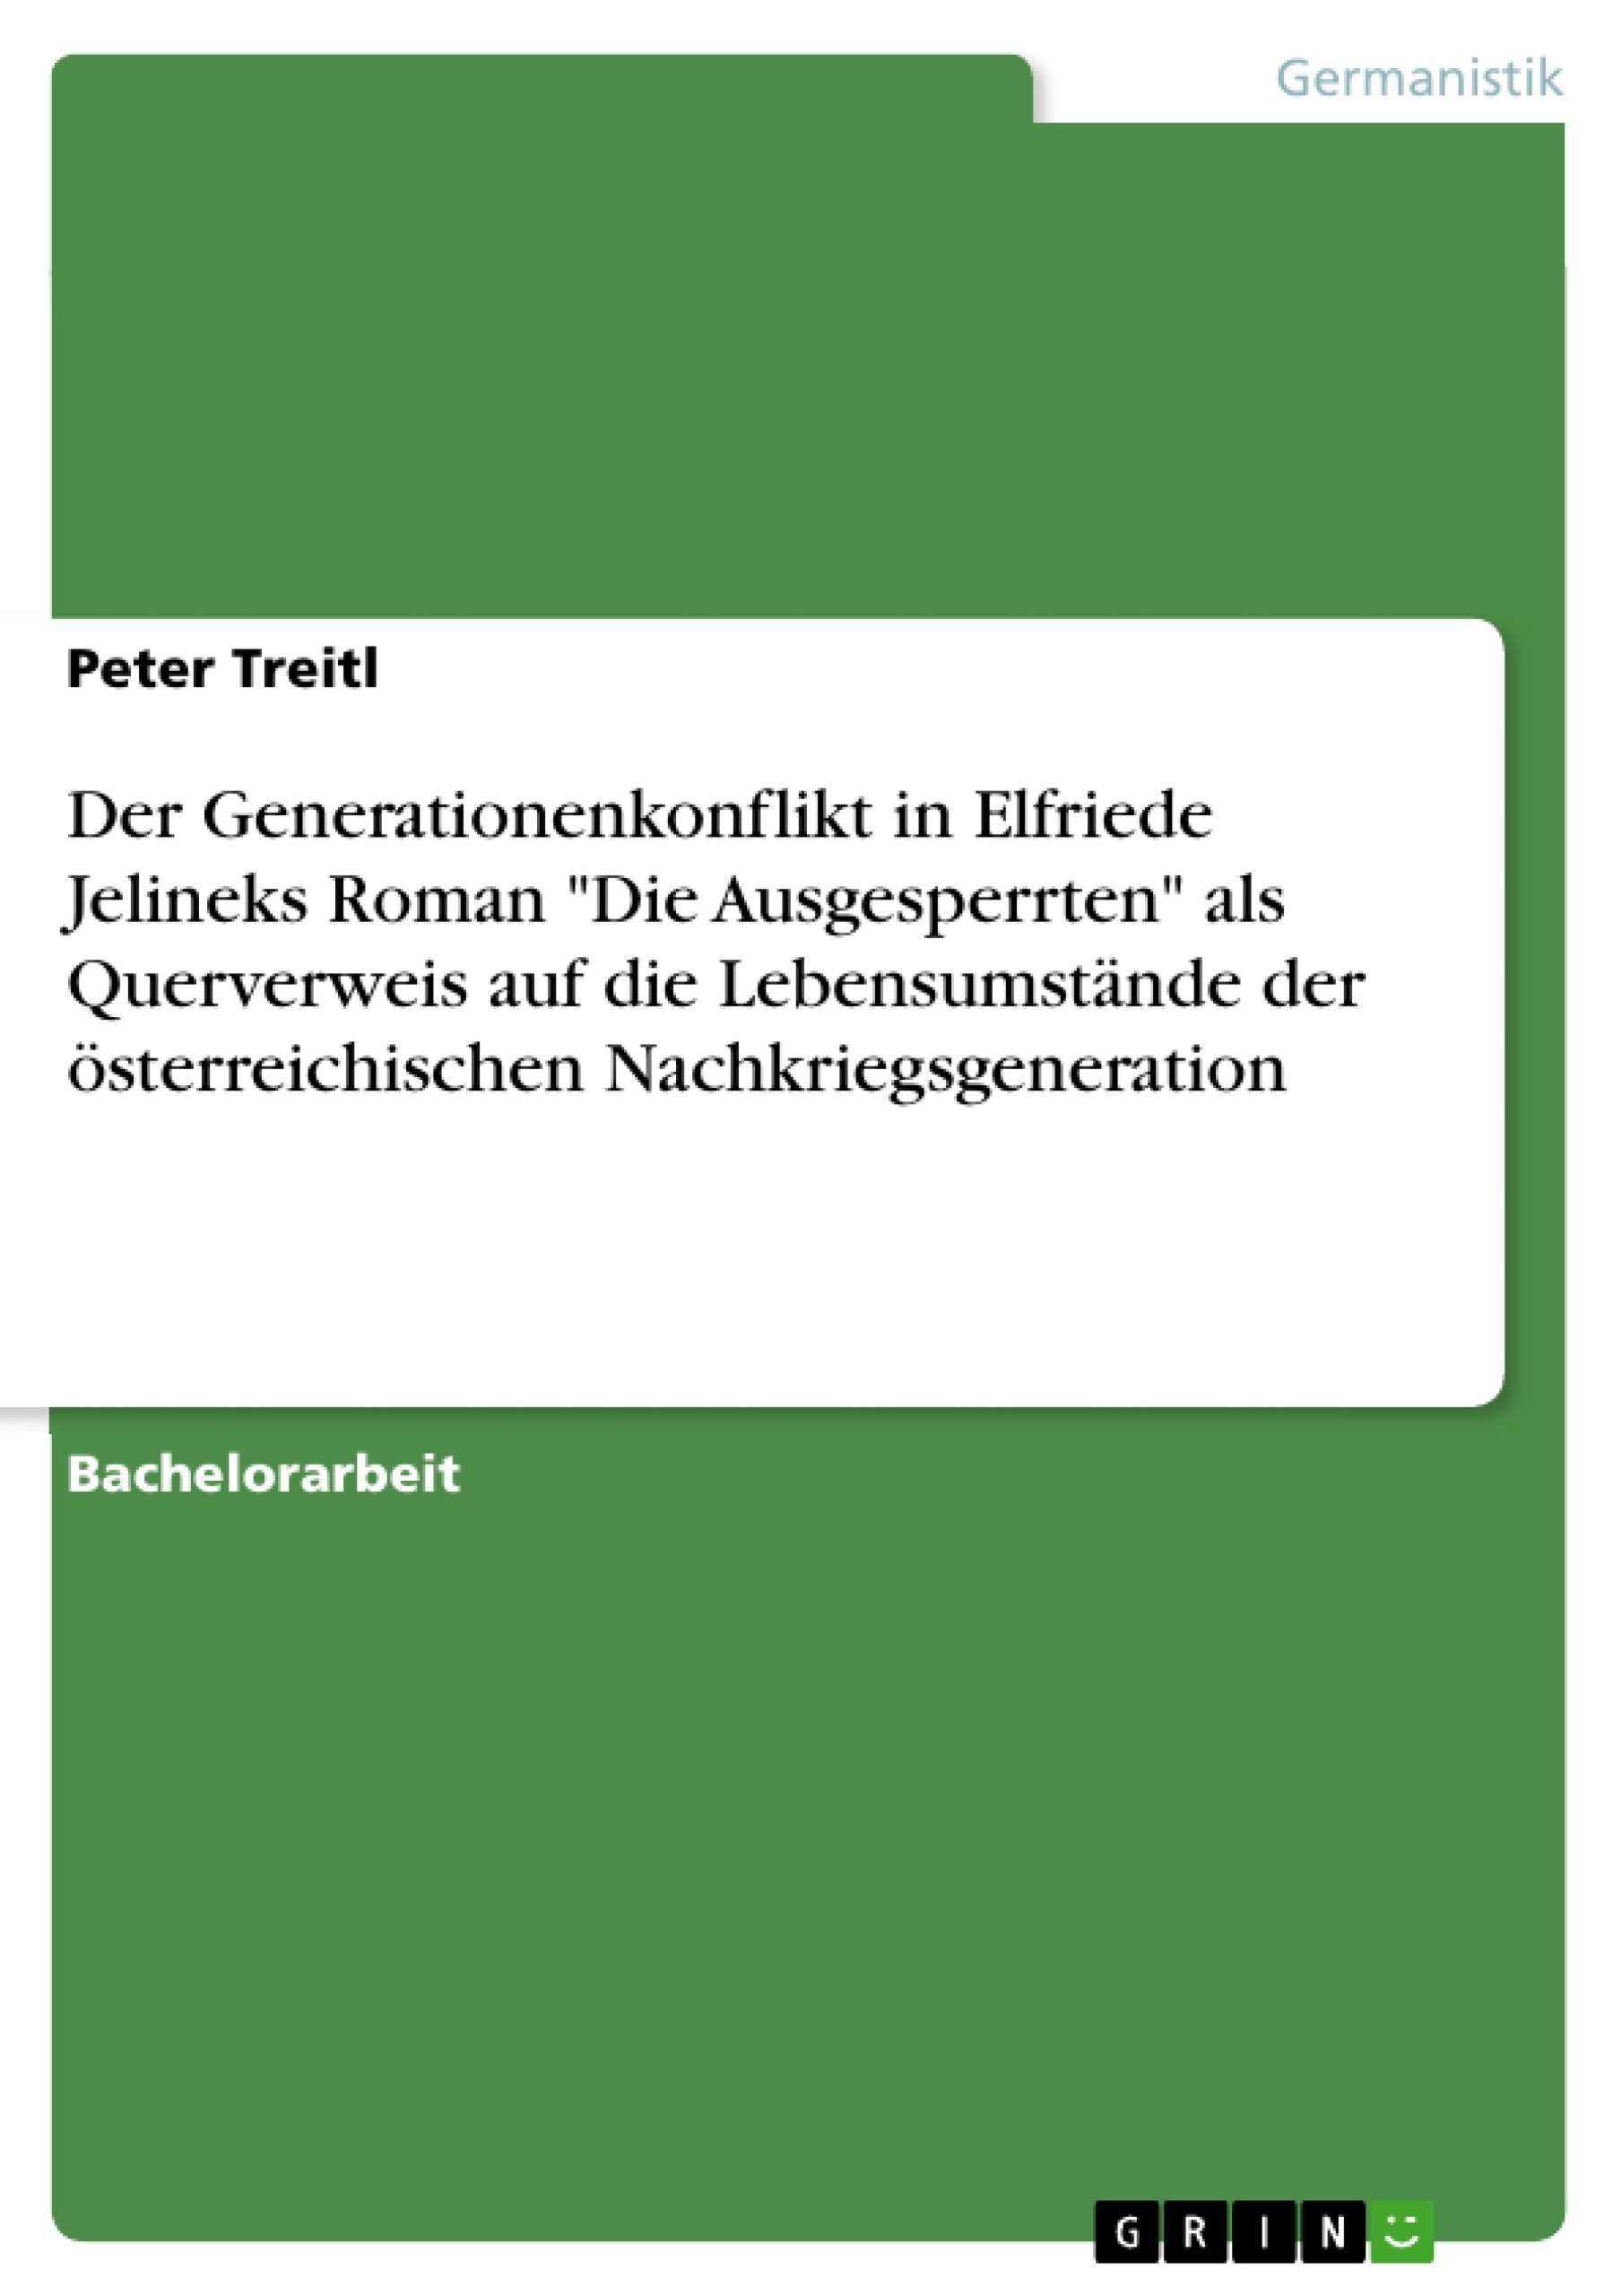 Título: Der Generationenkonflikt in Elfriede Jelineks Roman "Die Ausgesperrten" als Querverweis auf die Lebensumstände der österreichischen Nachkriegsgeneration